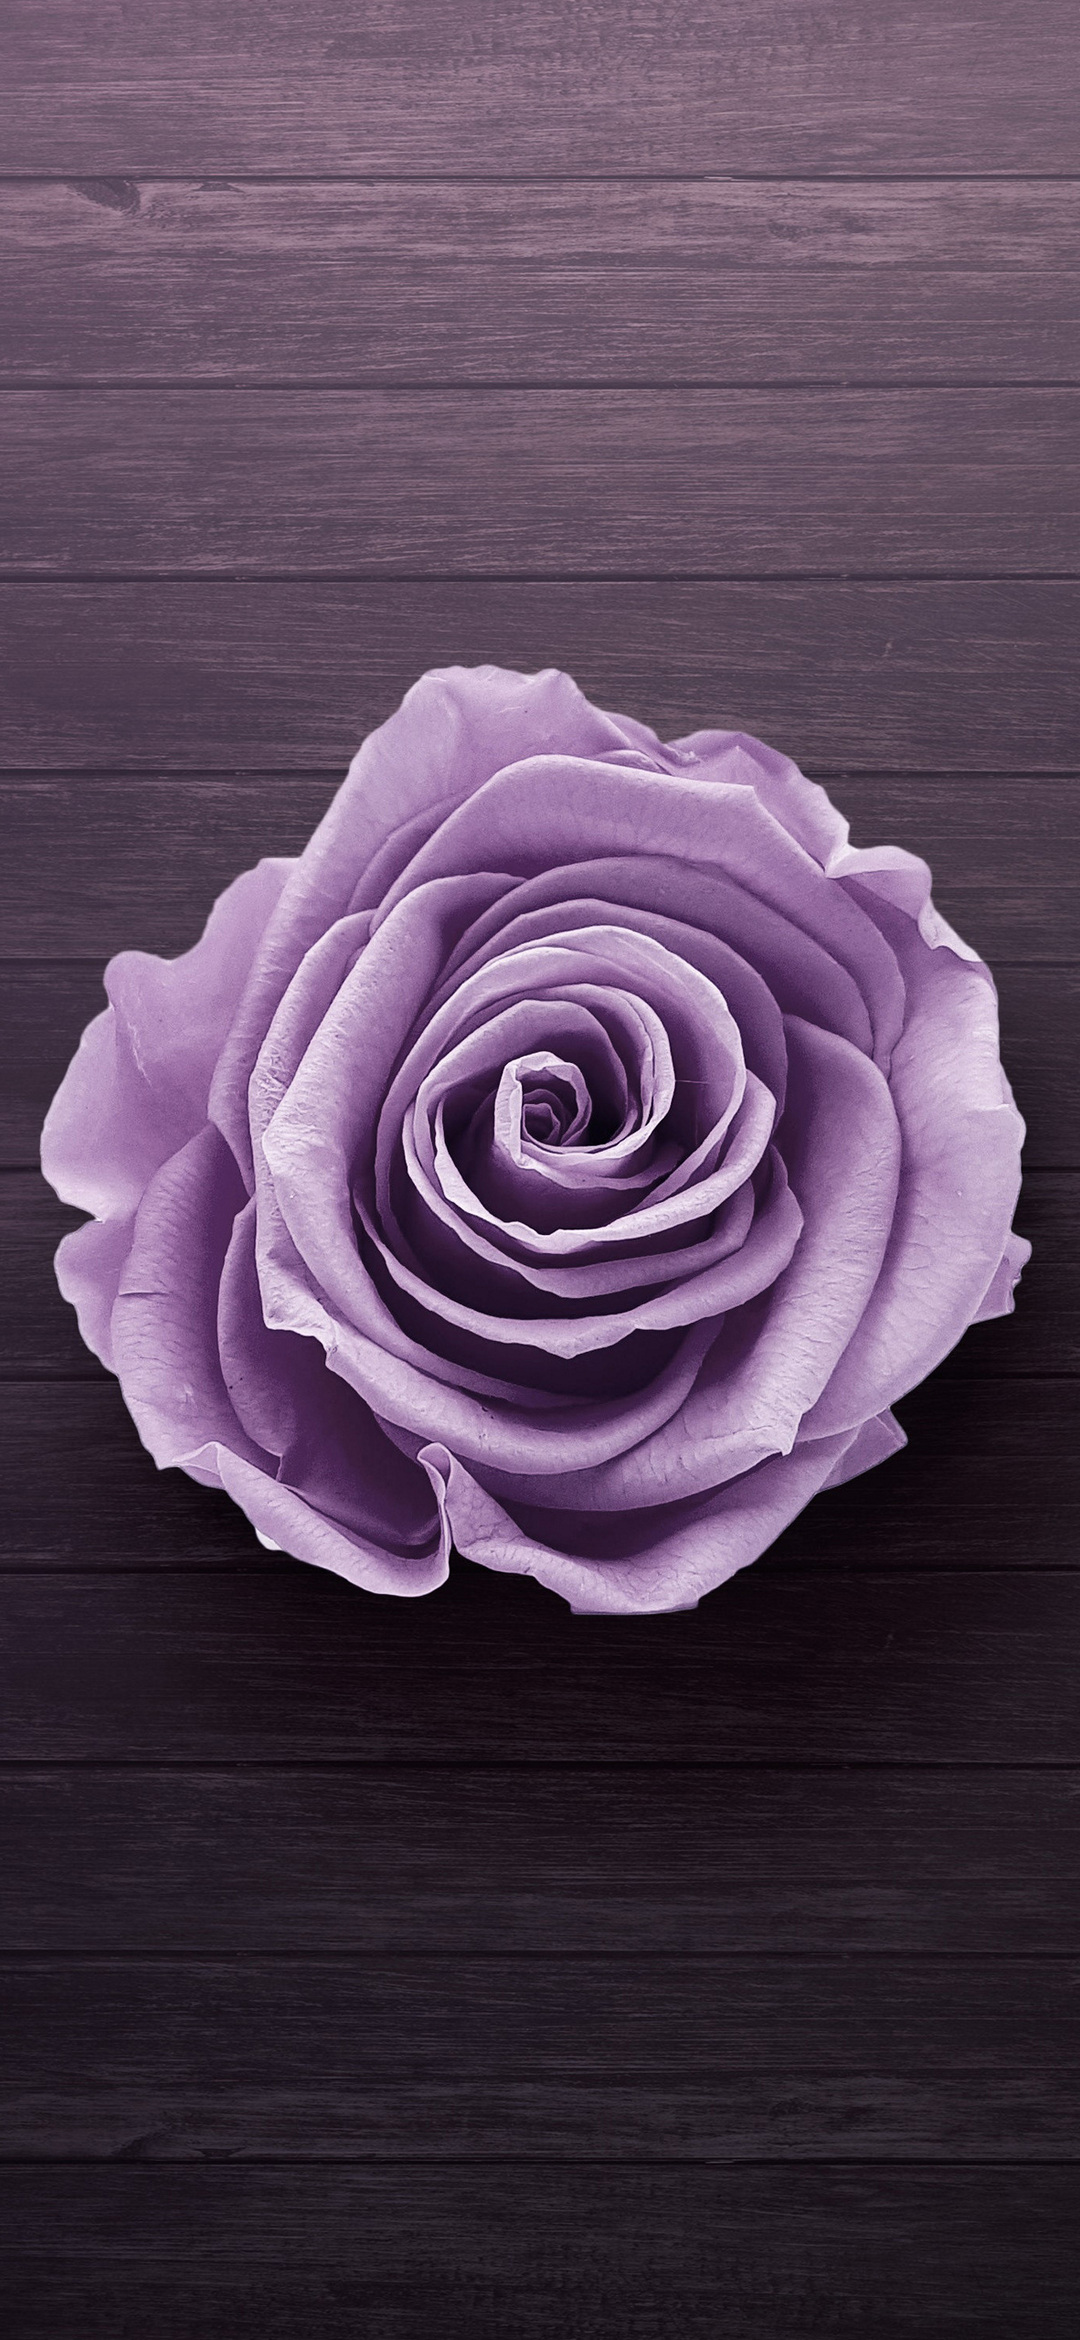 上から見た薄い紫の薔薇 Find X Android 壁紙 待ち受け Sumaran